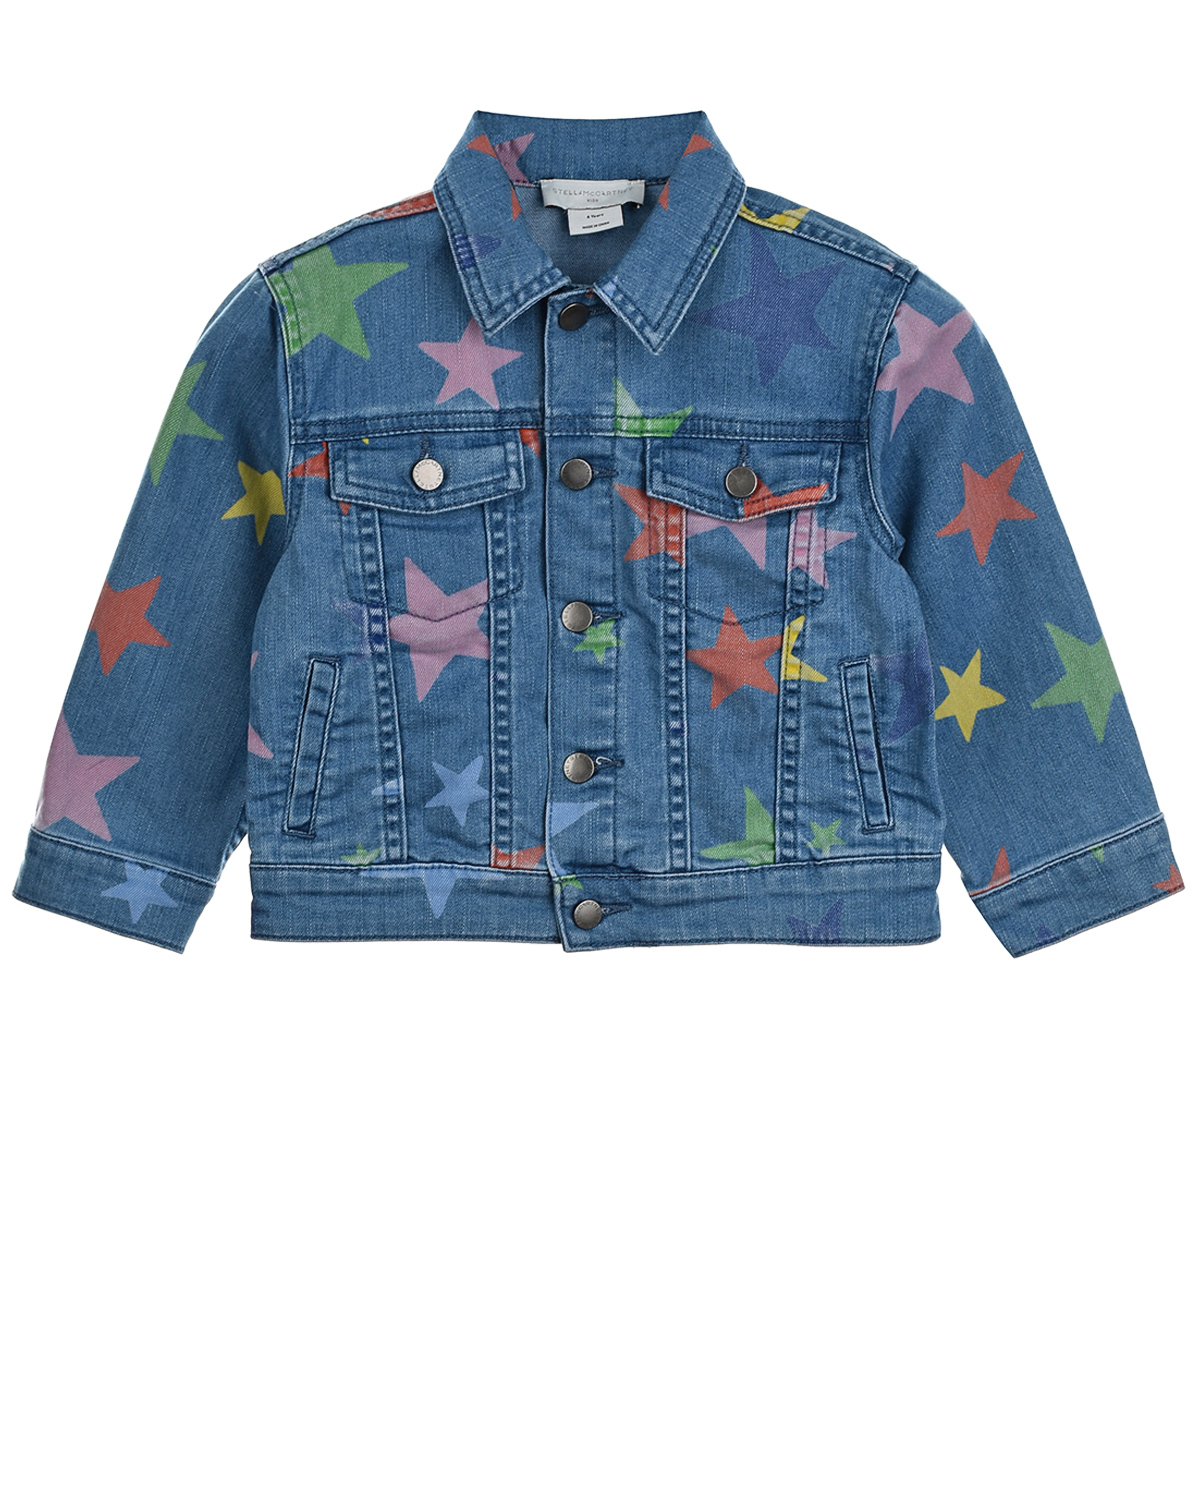 Джинсовая куртка с принтом "звезды" Stella McCartney детская, размер 98, цвет синий - фото 1